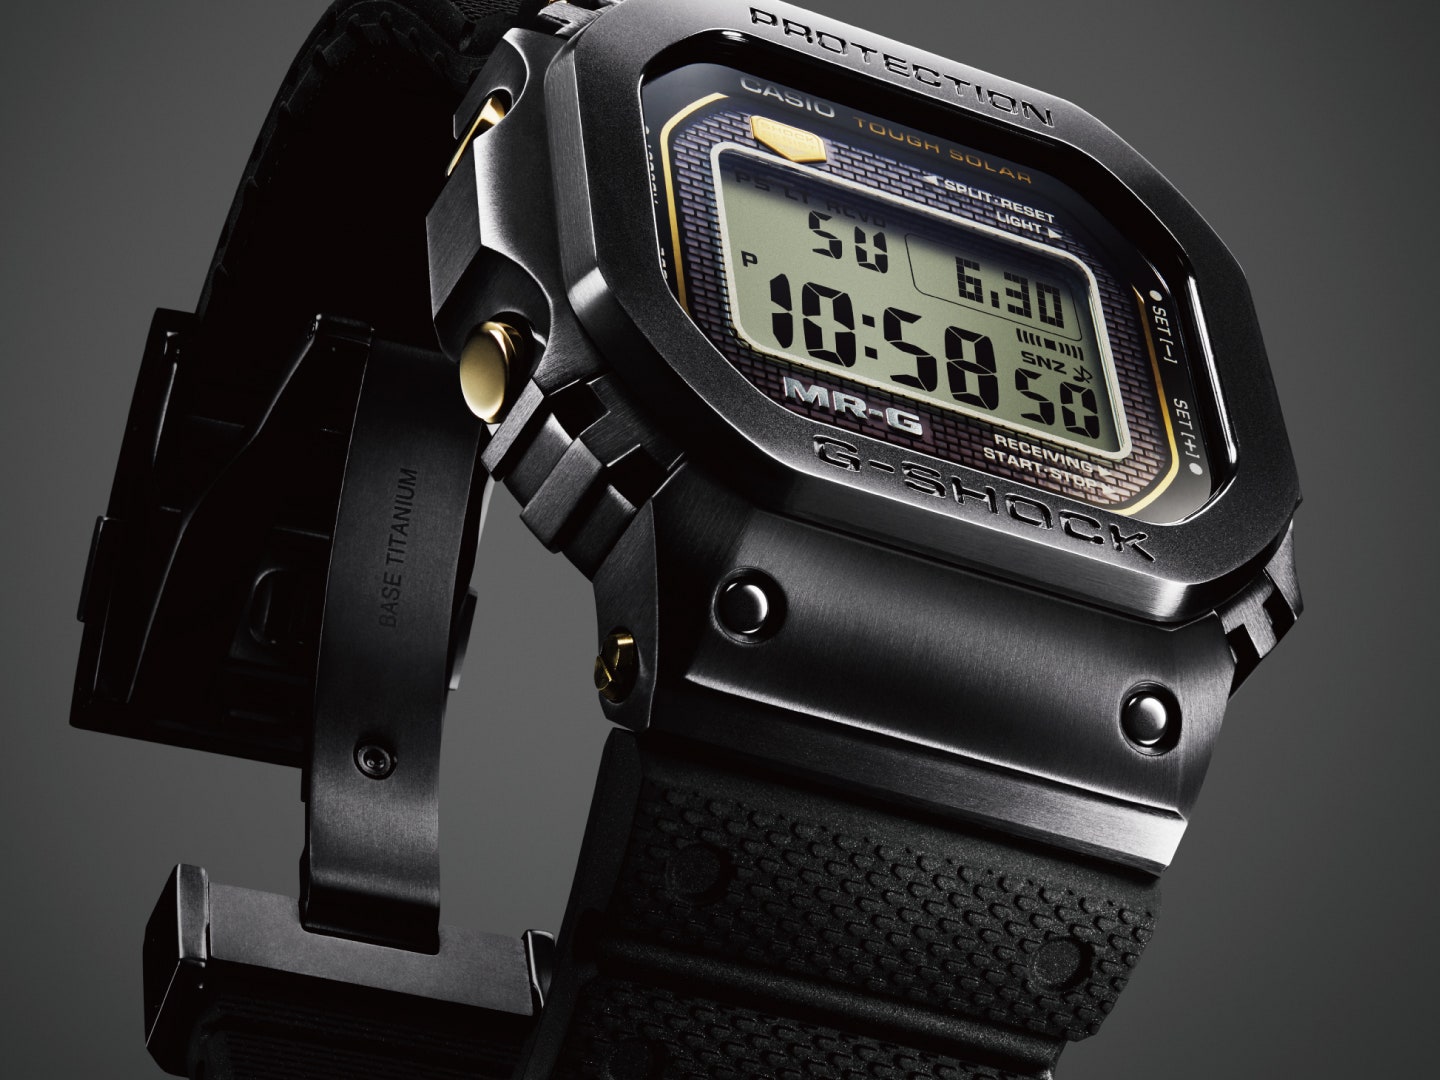 g-shock dévoile une montre indestructible inspirée d'un vieux modèle de 1983